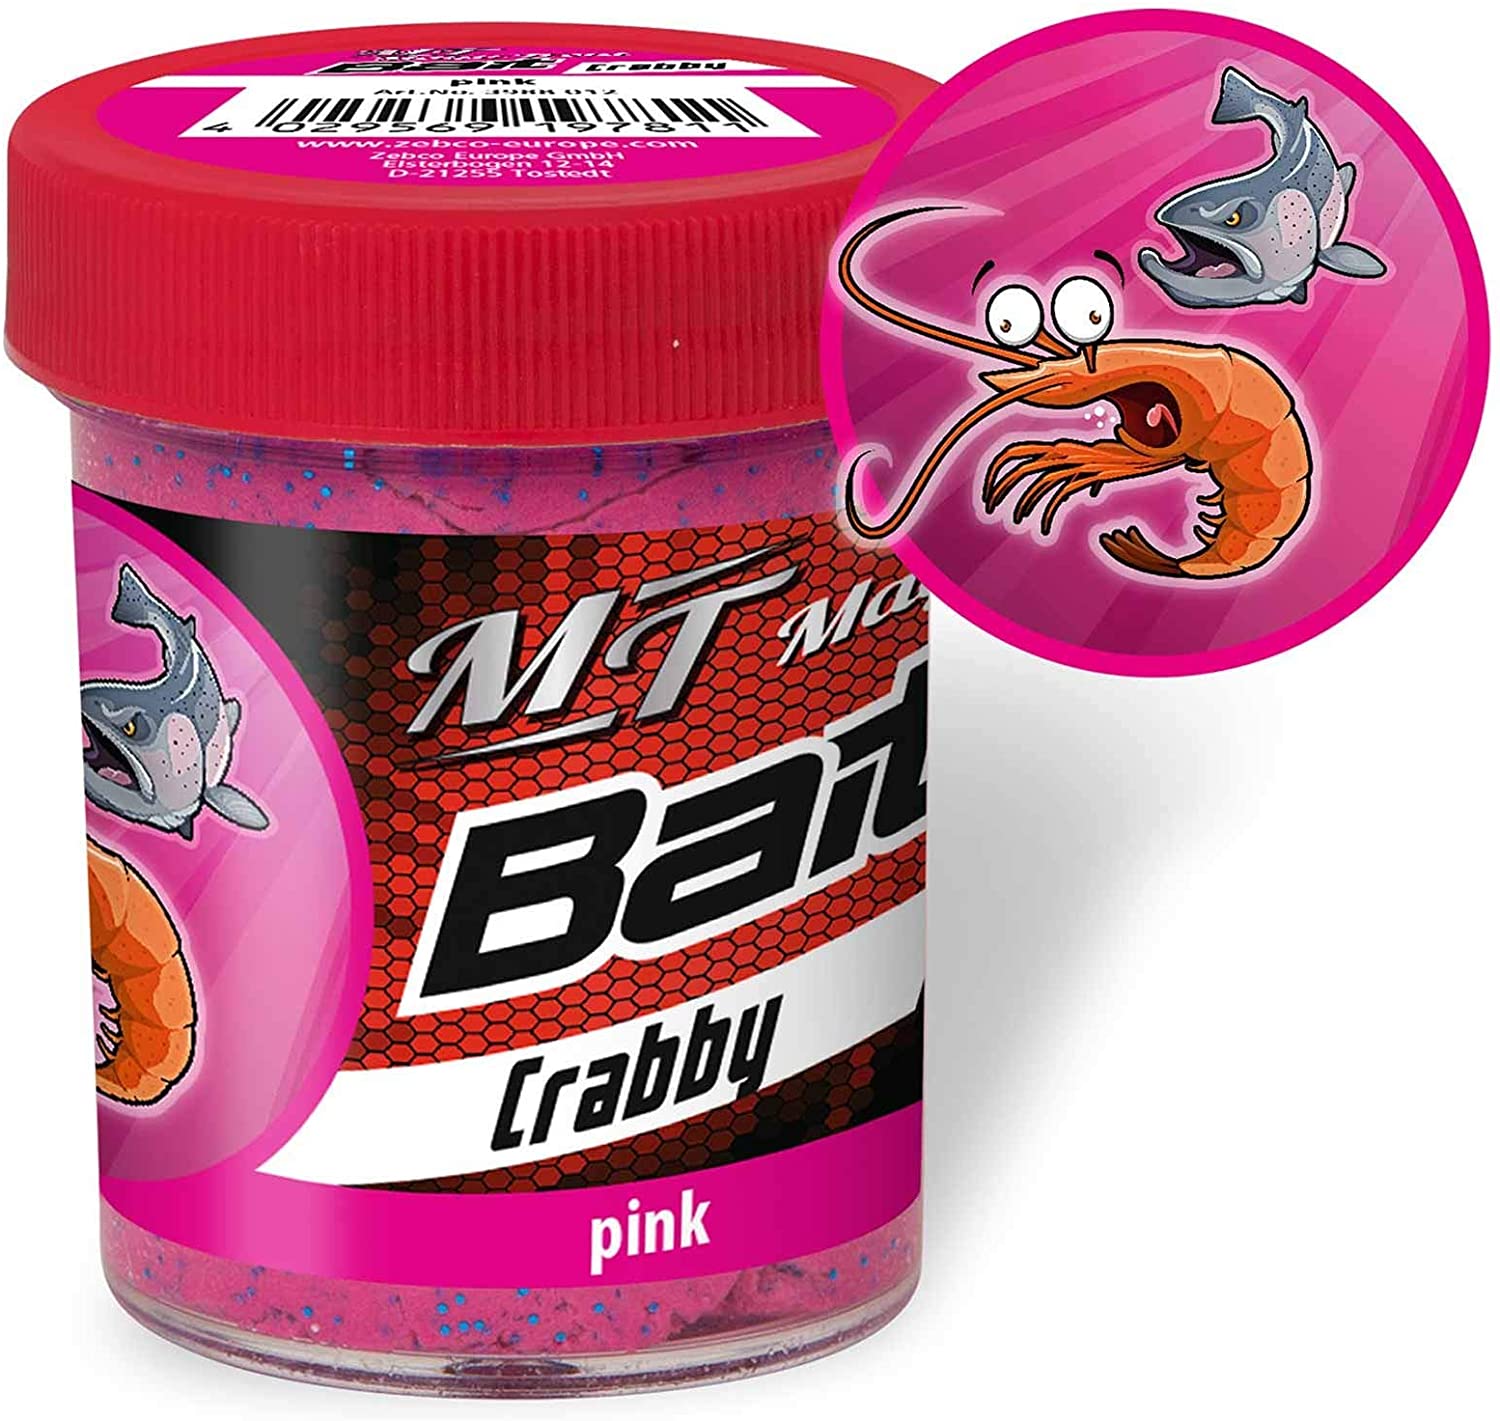 Magic Trout Crabby Paste Pink Colour (Rak) - Savršena savitljivost i ljepljivost, izuzetno atraktivna aroma i prave boje. Ovo je bio princip koji stoji iza razvoja nove paste za pastrmke Magic Trout-a. I šta možemo reći? Ne može biti ništa bolje od Magic Trout Paste. Cijena: 14 BAM